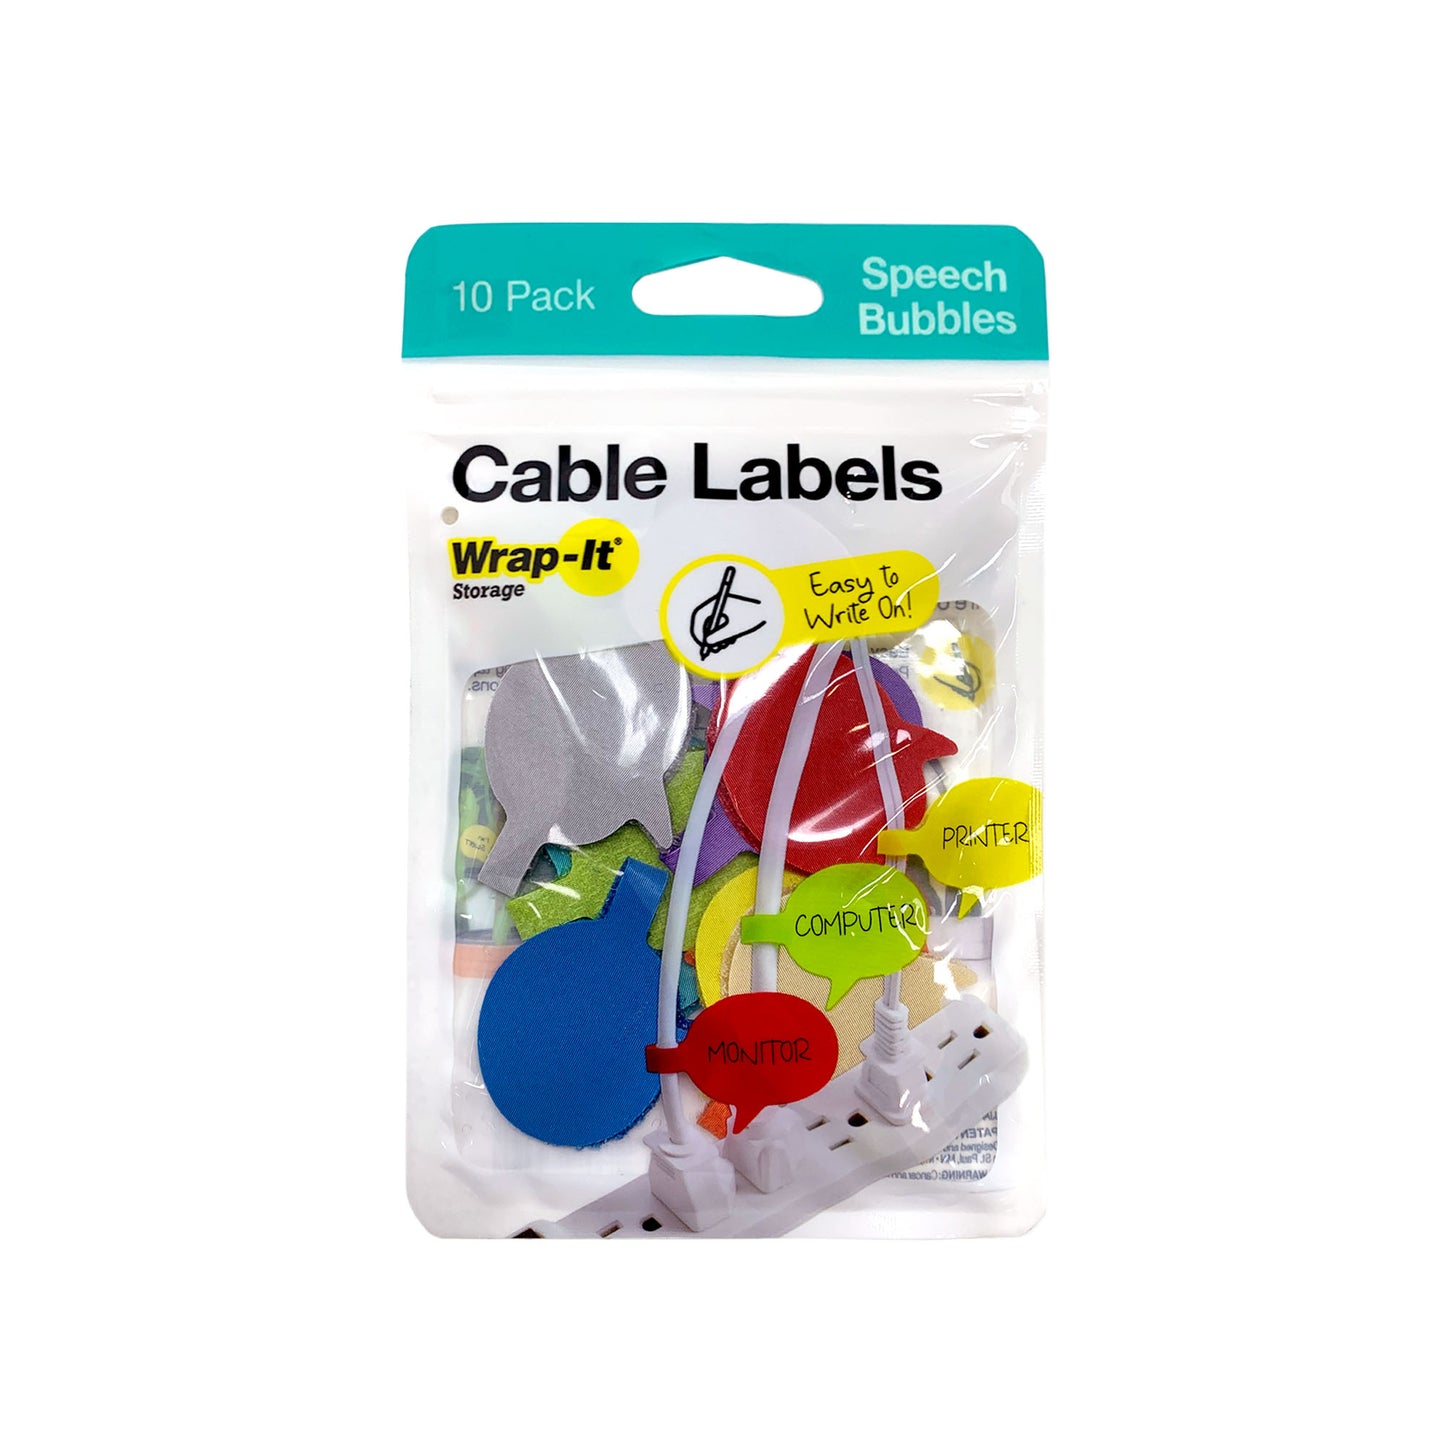 Cable Labels - Speech Bubbles (10-Pack) - Wrap-It Storage